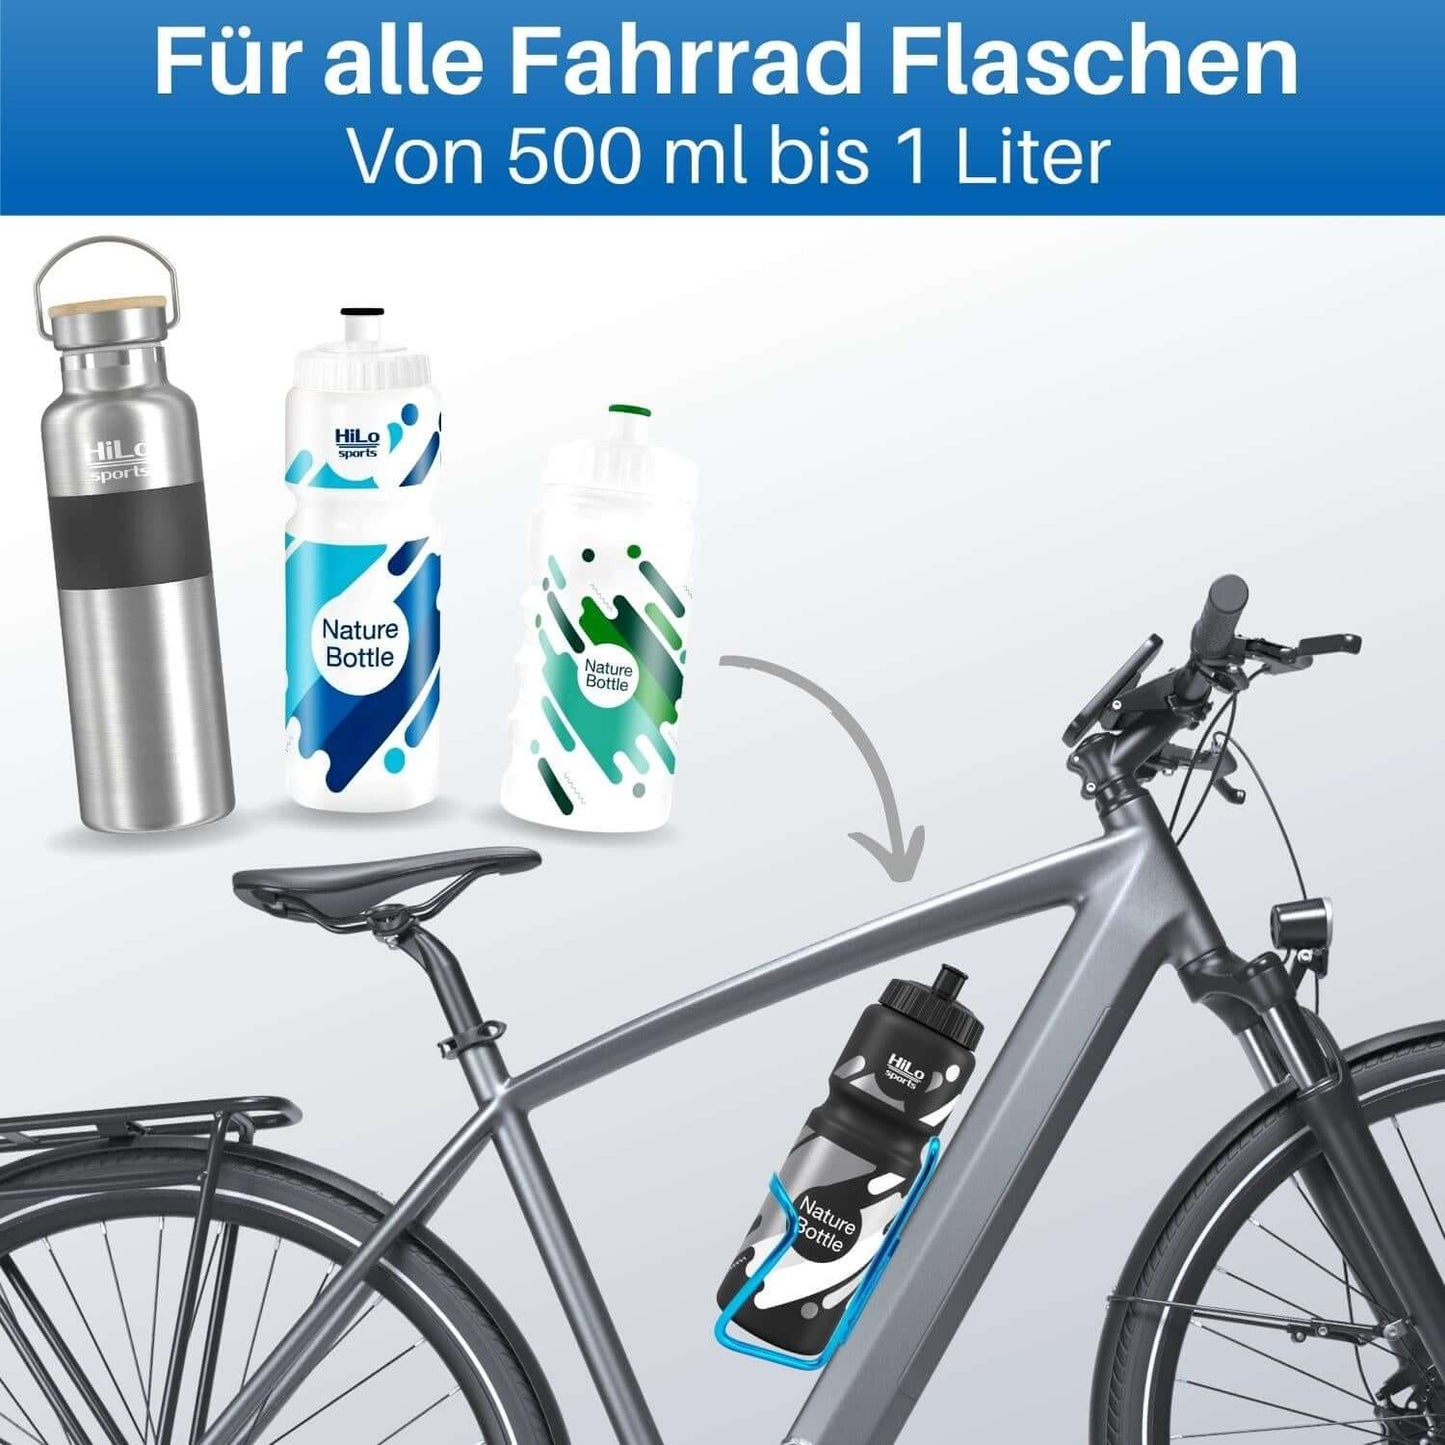 In die Rad Flaschenhalter passen alle standardisierten Fahrrad Trinkflaschen von 0,5 bis 1 Liter Volumen.